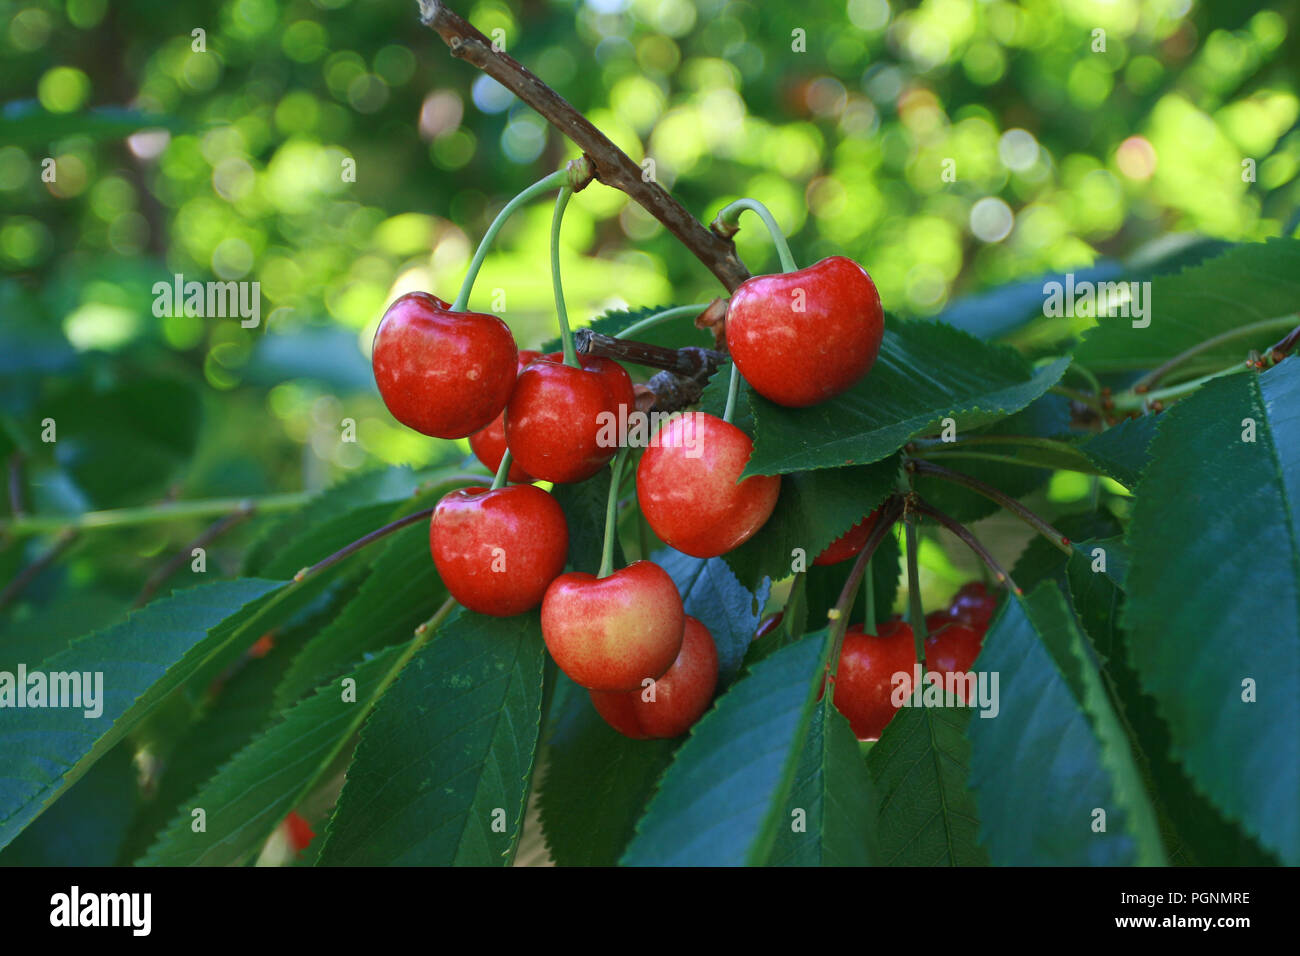 Ripe Rainier Cherries hanging from branch on tree Stock Photo